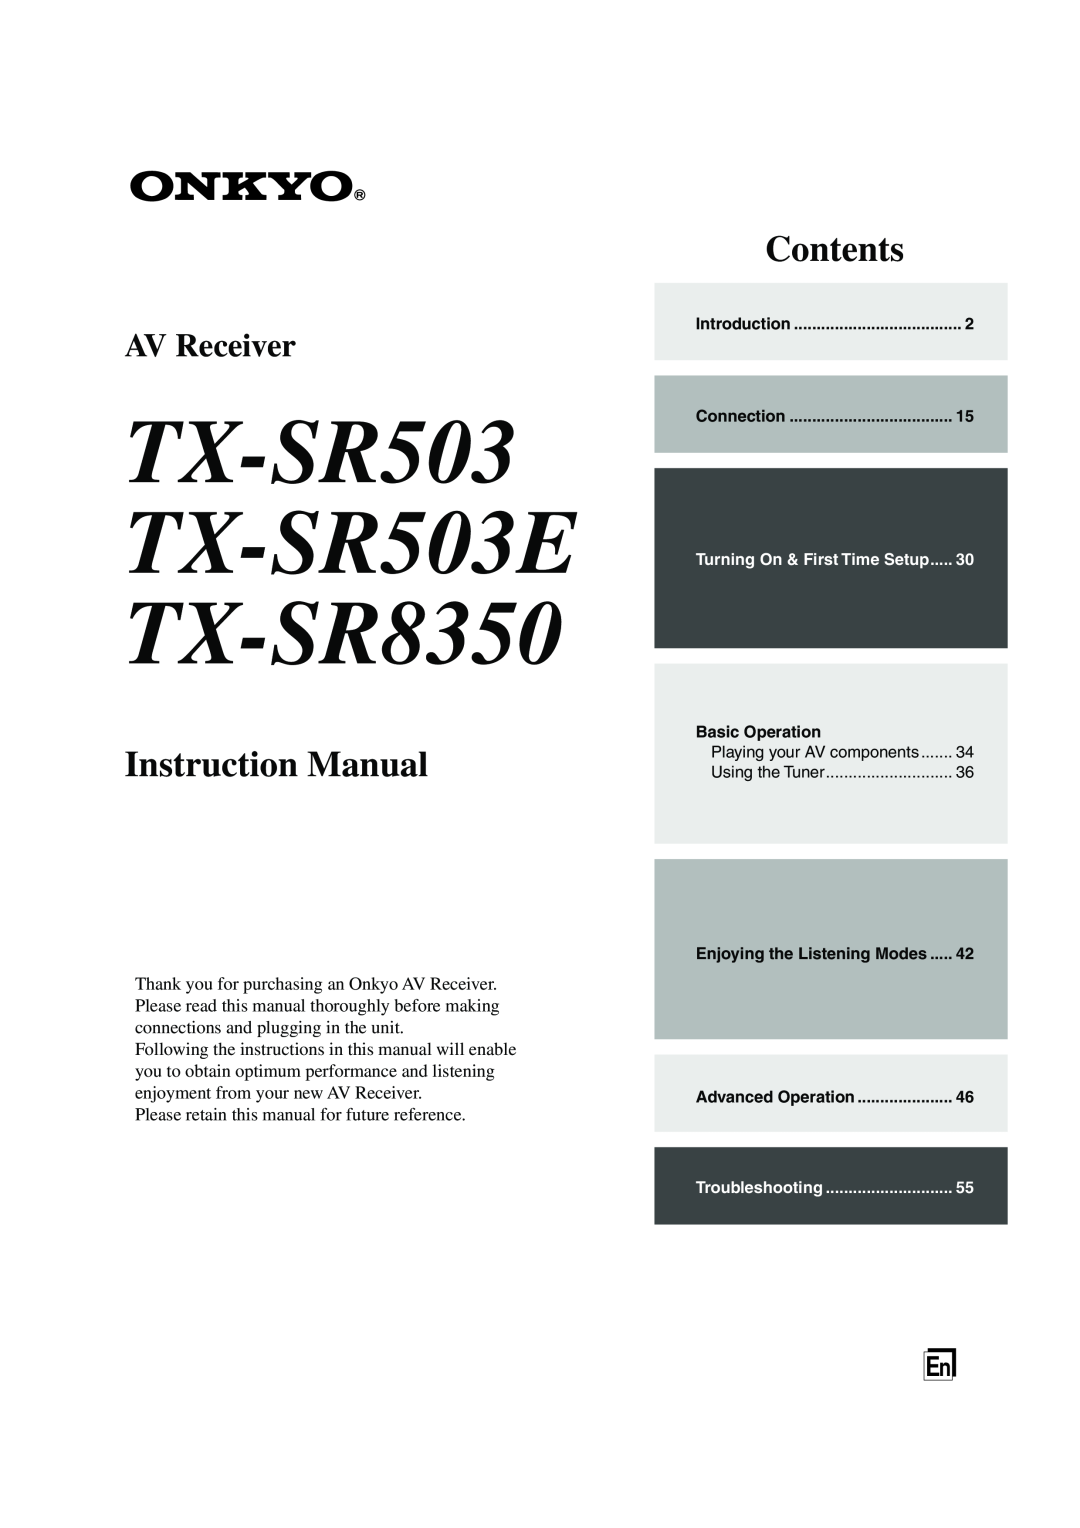 Onkyo instruction manual TX-SR503 TX-SR503E TX-SR8350, Instruction Manual, Contents, AV Receiver 